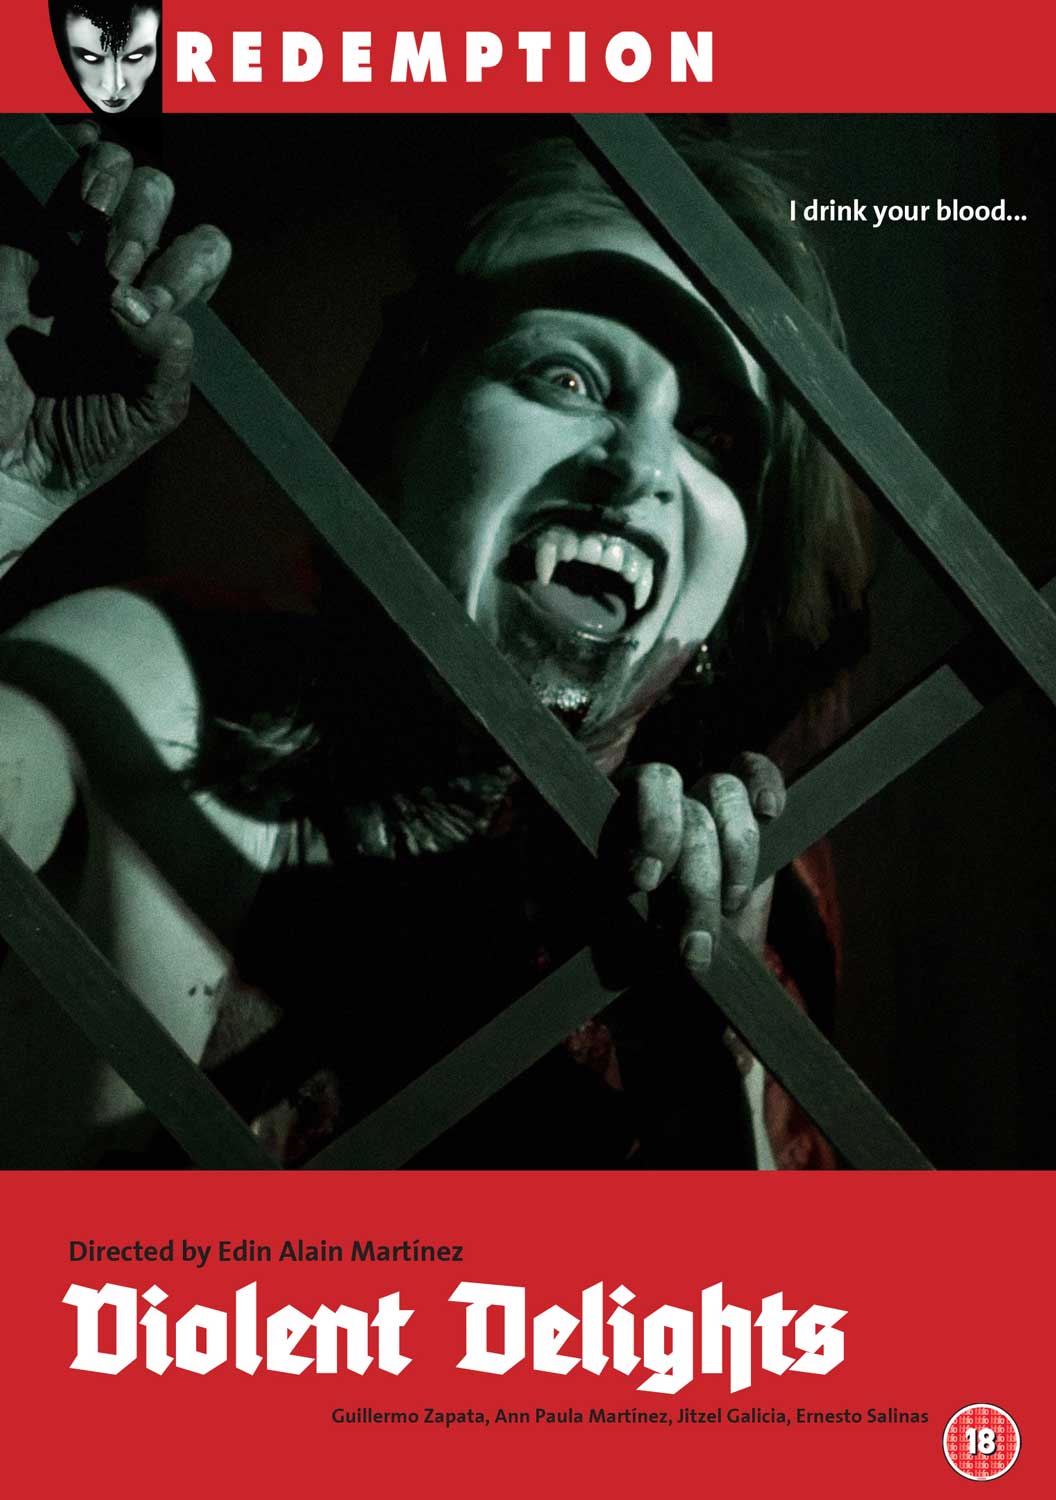 DVD cover for feature: Violent Delights aka bebr de tu sangre